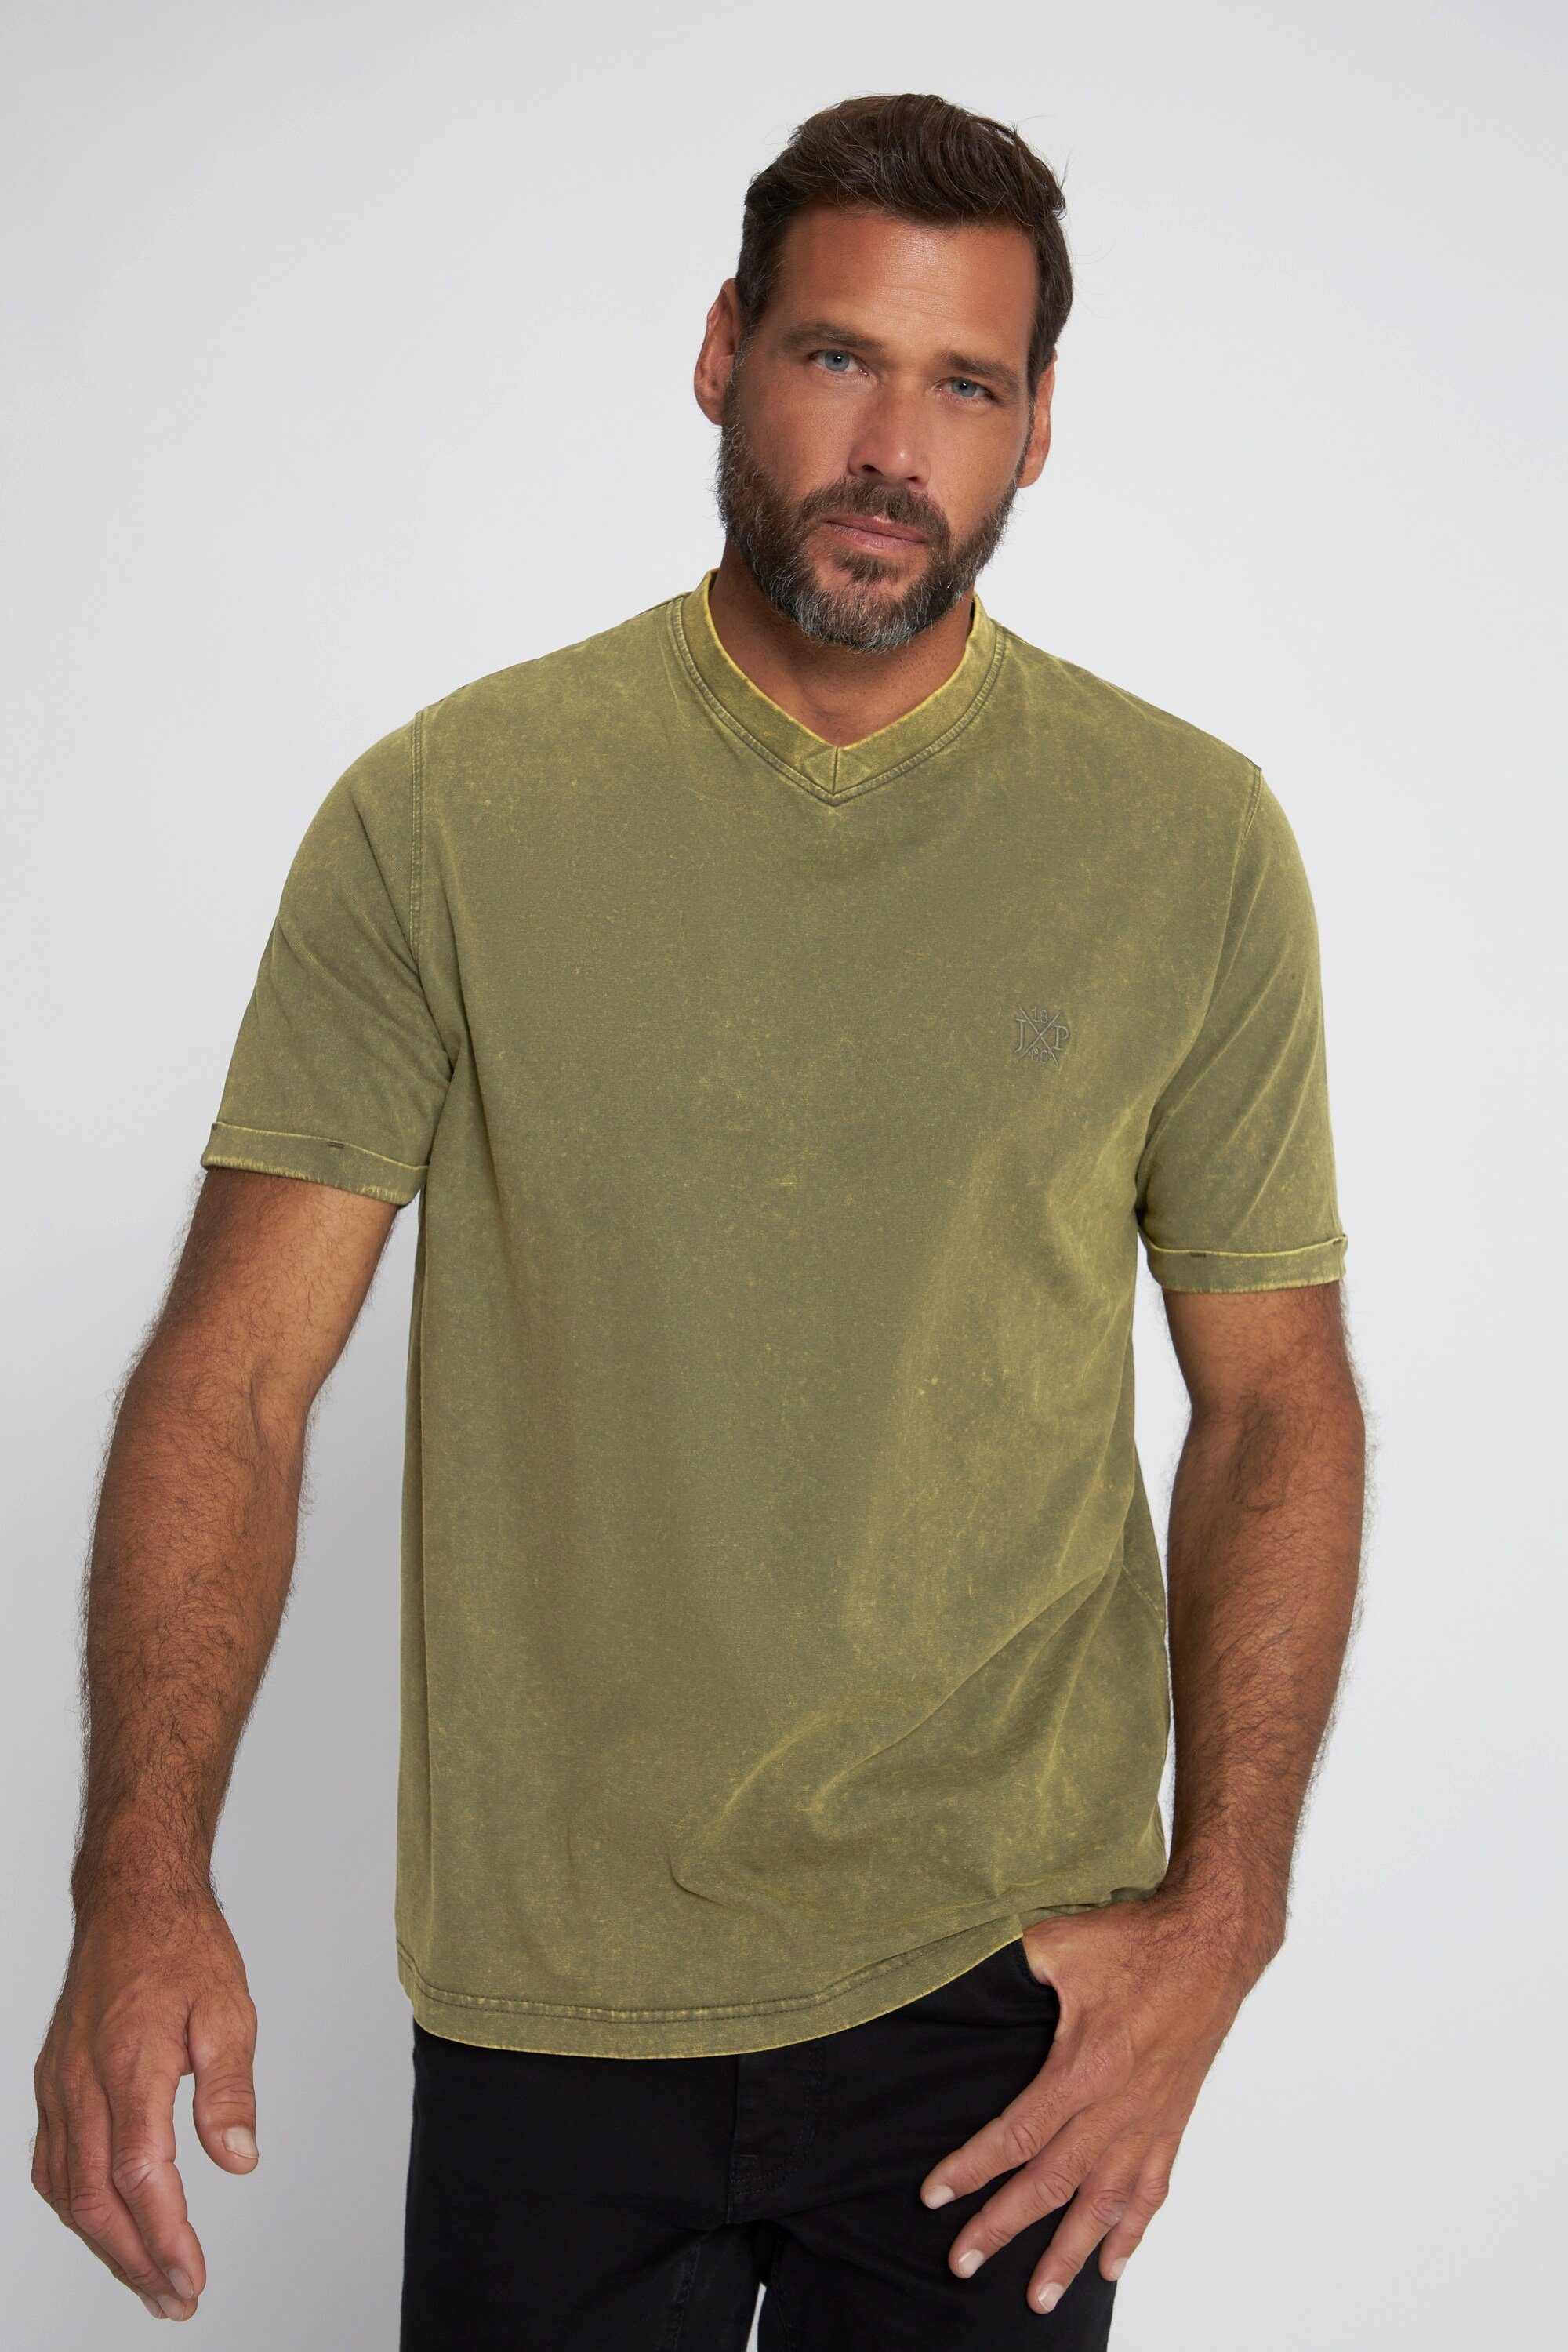 JP1880 T-Shirt T-Shirt Halbarm acid washed V-Ausschnitt tannengrün